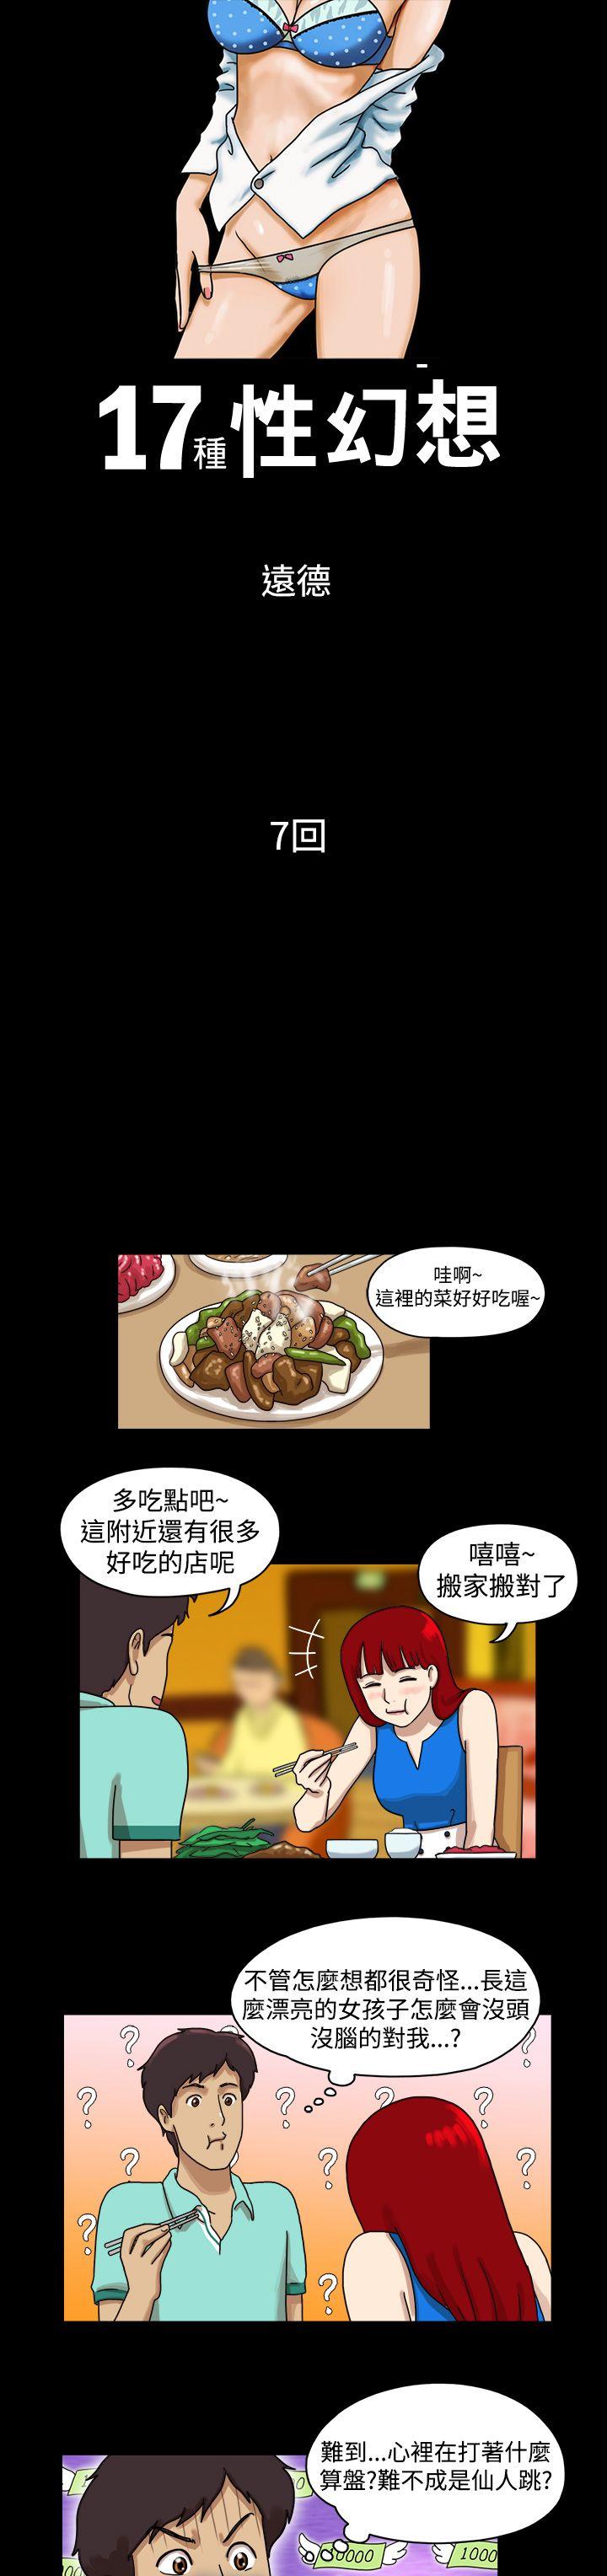 韩国污漫画 17種性幻想第一季 第7话 1